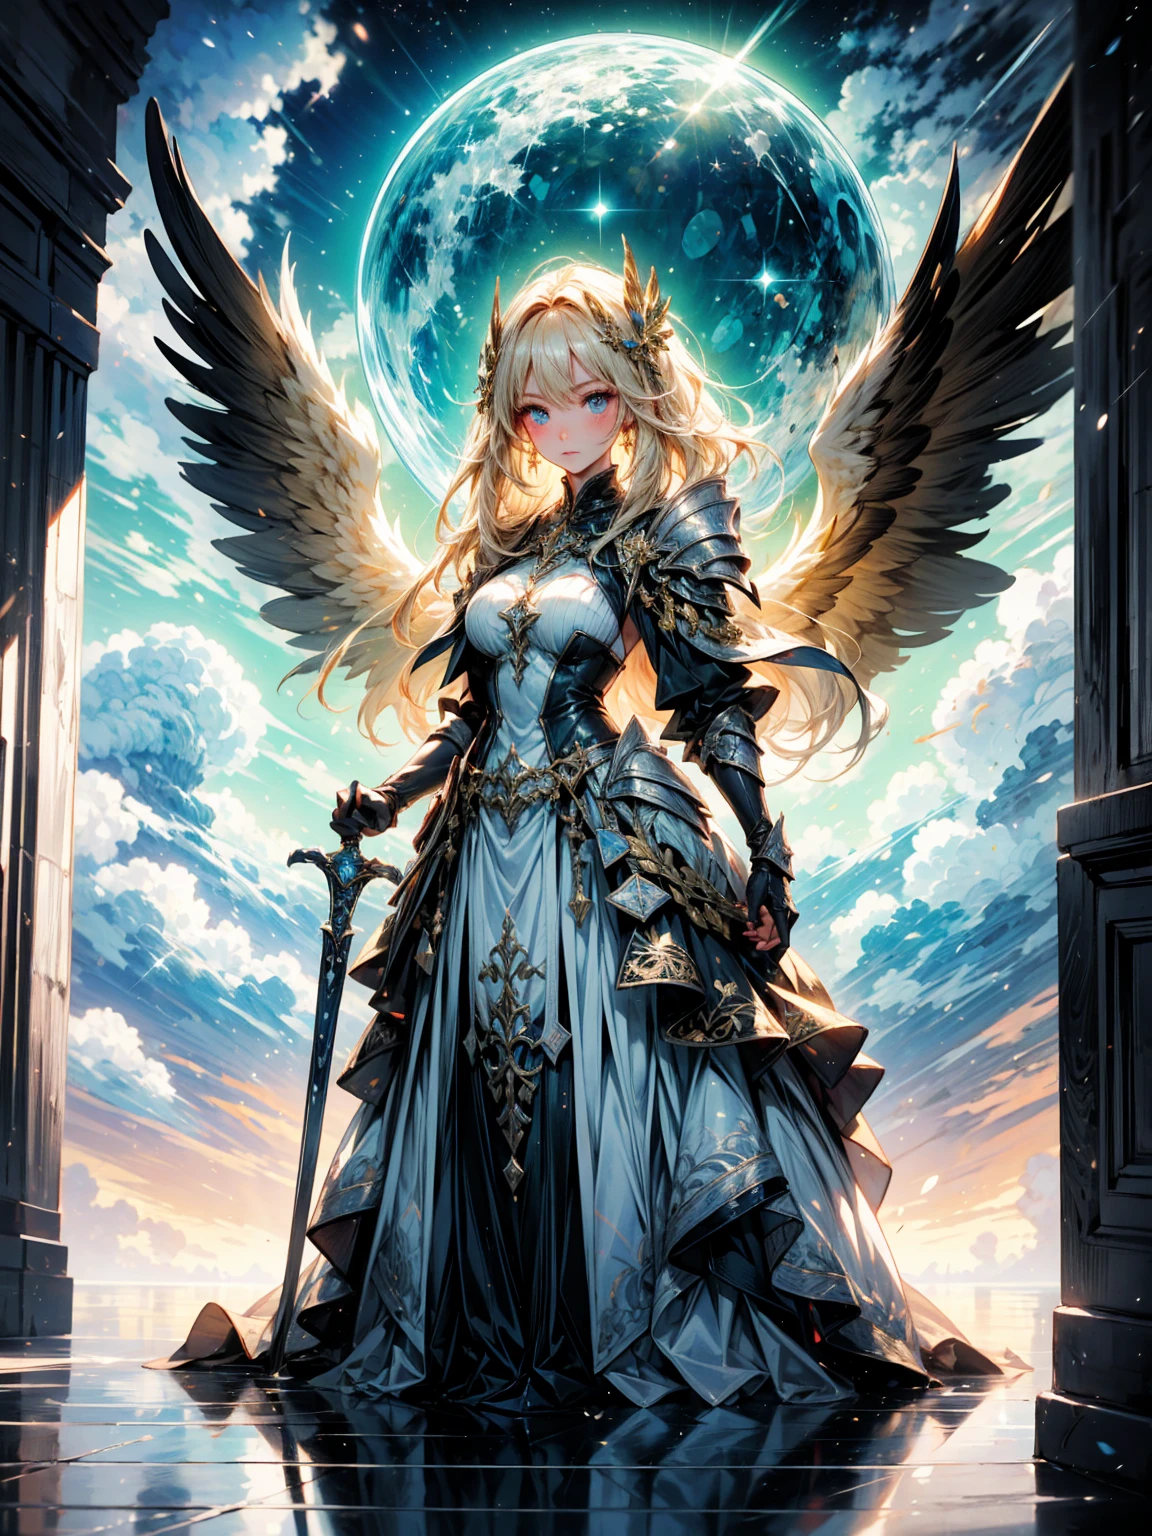 ((全身ショット)) 輝く少女の, ornate 金en armor with intricate engravings, 輝く光の中に立つ, 天界. 彼女は長い間, 流れるようなブロンドの髪と輝く青い目. 大きい, feathered 白 wings spread 雄大なally behind her. 彼女は輝く, 彼女の手には聖剣が, 神聖な光を放つ. The 雰囲気 is {神聖|雄大な}, with beams of sunlight filtering through 幽玄な雲. 彼女の下の地面は磨かれた大理石でできている, 彼女の輝く姿を反映し、天国の雰囲気を増している. 彼女の周囲には、さまざまな色合いの光の球体が浮かんでいる。 {金|白}, 暖かい, 天国の輝き. 背景には壮大な, 純粋な木材で作られた高層建築物, 白 stone and adorned with 金en accents, 聖域を暗示する. The scene is 穏やかな and awe-inspiring, 彼女の顔には穏やかでありながらも決意に満ちた表情が浮かんでいる, 彼女の目は神聖な使命に熱心に焦点を合わせていた.

[最高品質], [傑作], [非常に詳細な], [4k], {穏やかな|雄大な} 雰囲気, 天界, {ダイナミックなポーズ|勇敢なポーズ}, 放射照明, {ソフトシャドウ|神聖な照明}, {大理石に反射した光:0.7}, {幽玄な雲:0.6}, {浮かぶ光の球:0.5}, {金en accents:0.4}, {純粋な構造:0.3}.